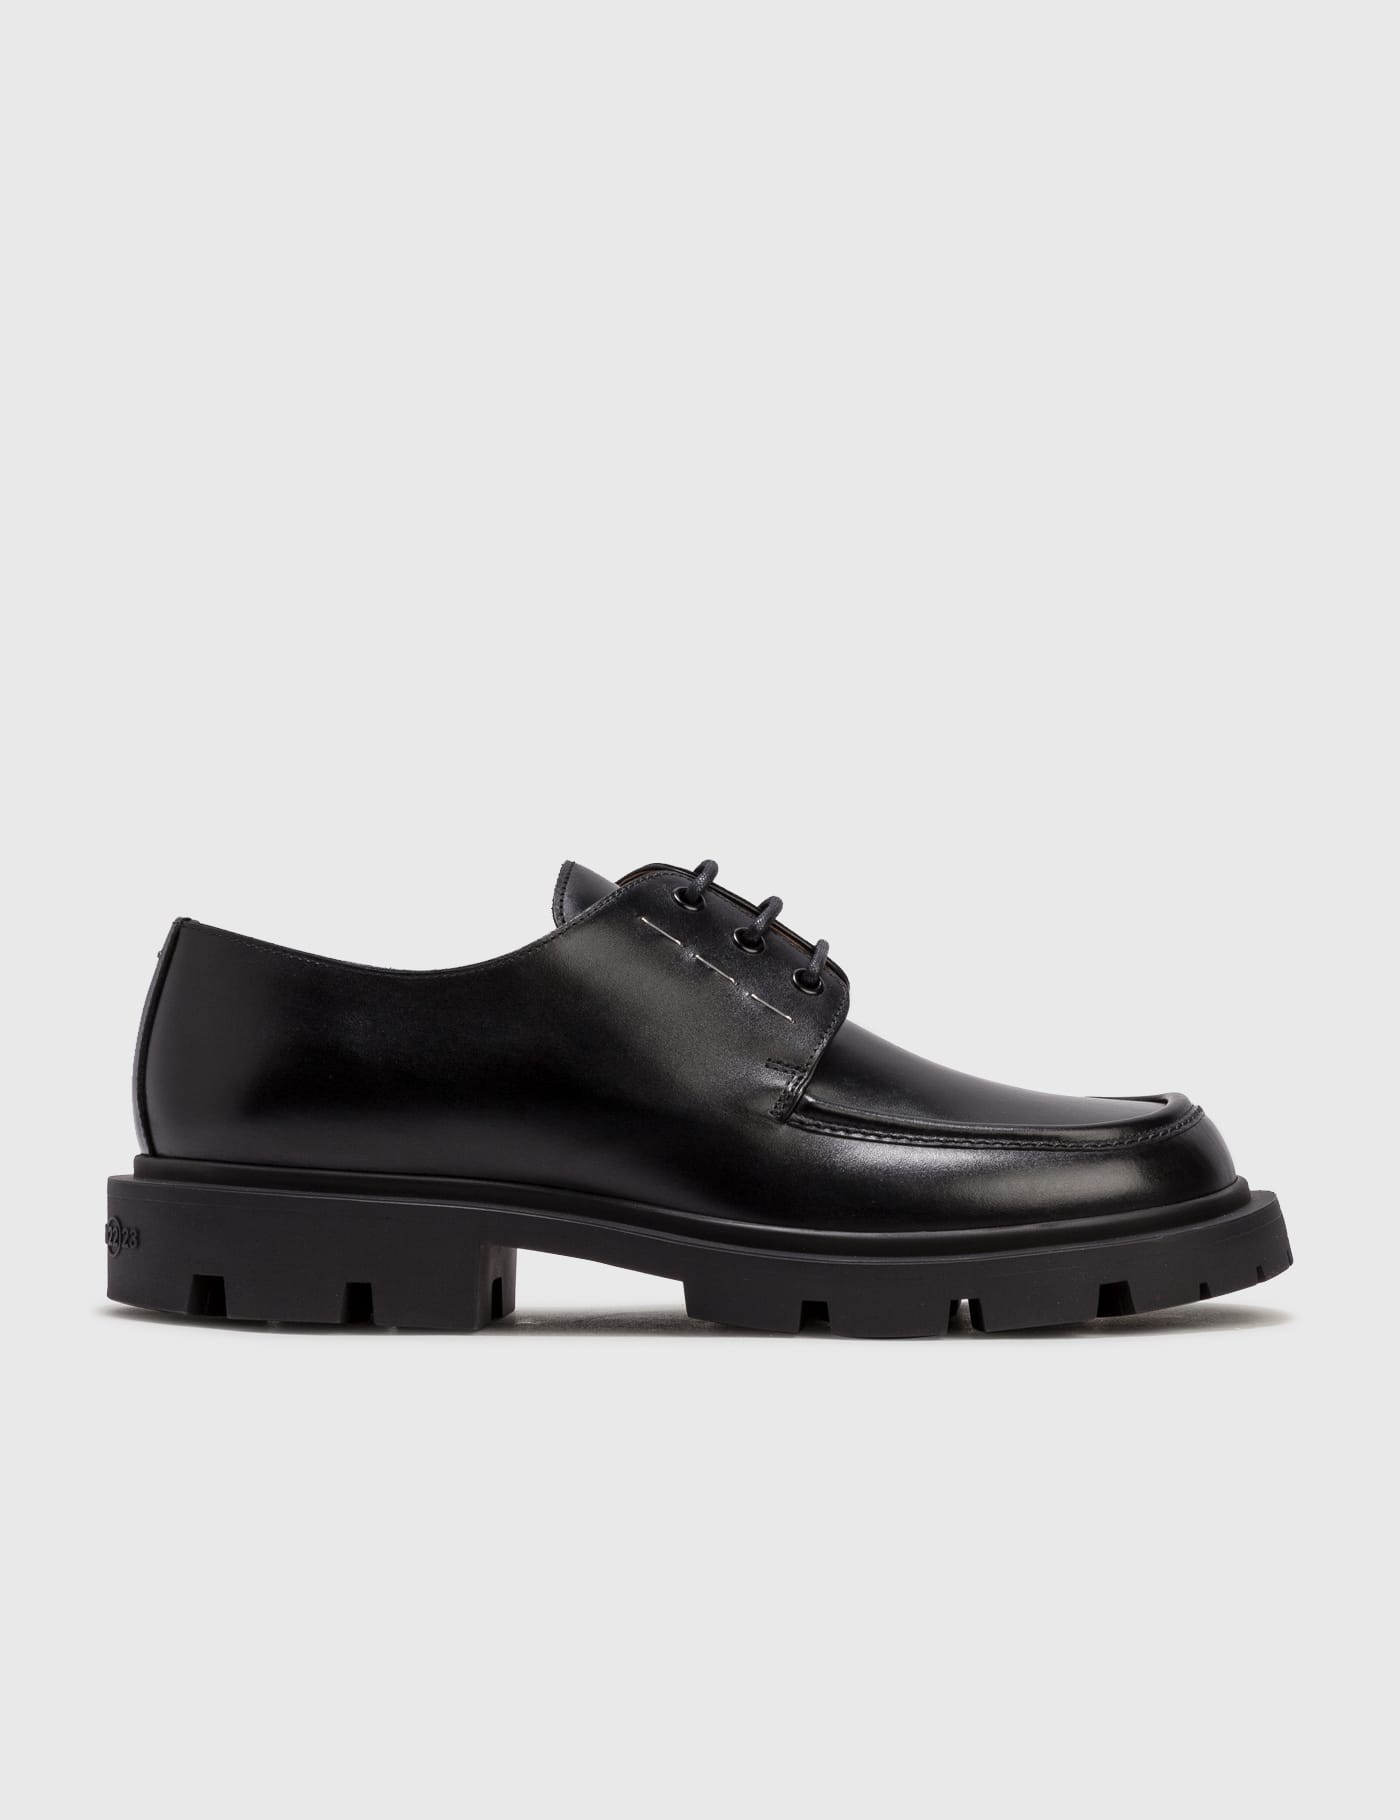 Maison Margiela Black Leather Staple Derbys for Men Mens Shoes Lace-ups Derby shoes 